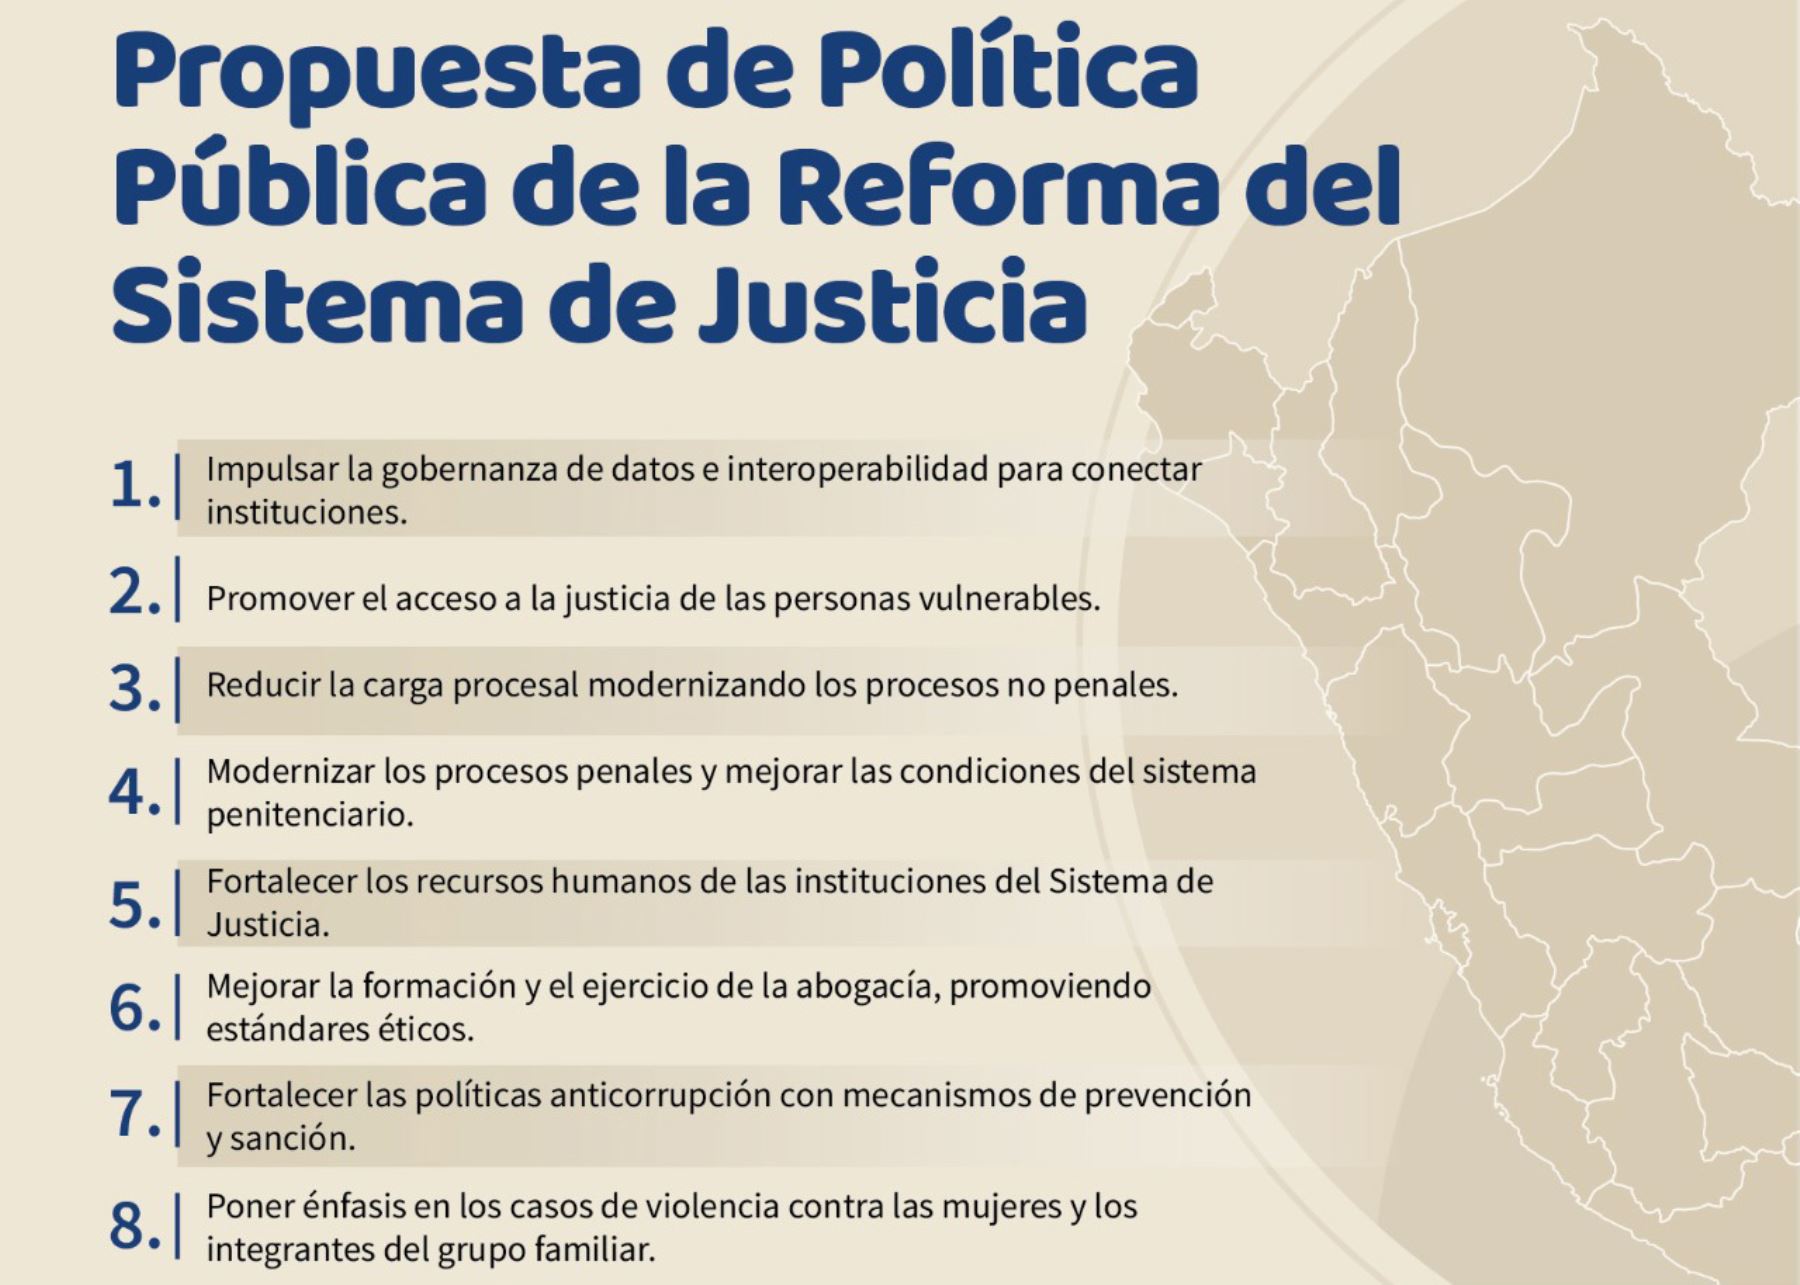 Propuesta de reforma del sistema de justicia.